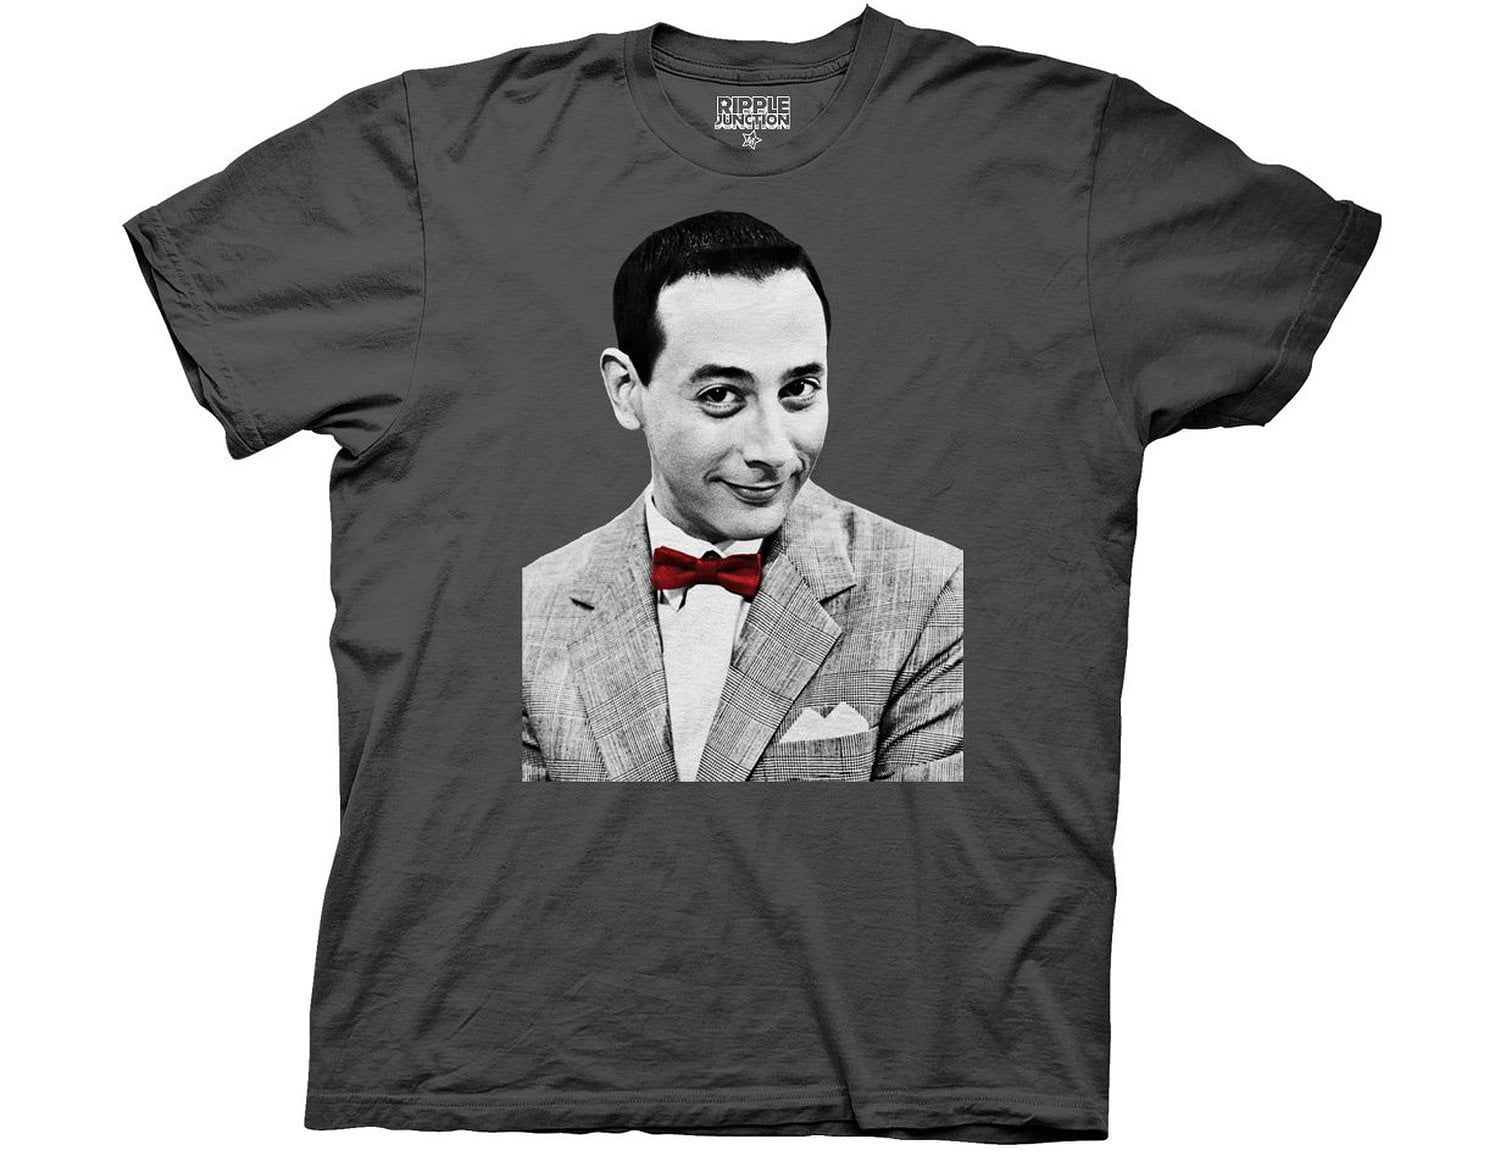 Pee Wee Herman - Pee-wee Herman T-Shirt - Red Bow Tie - Walmart.com.